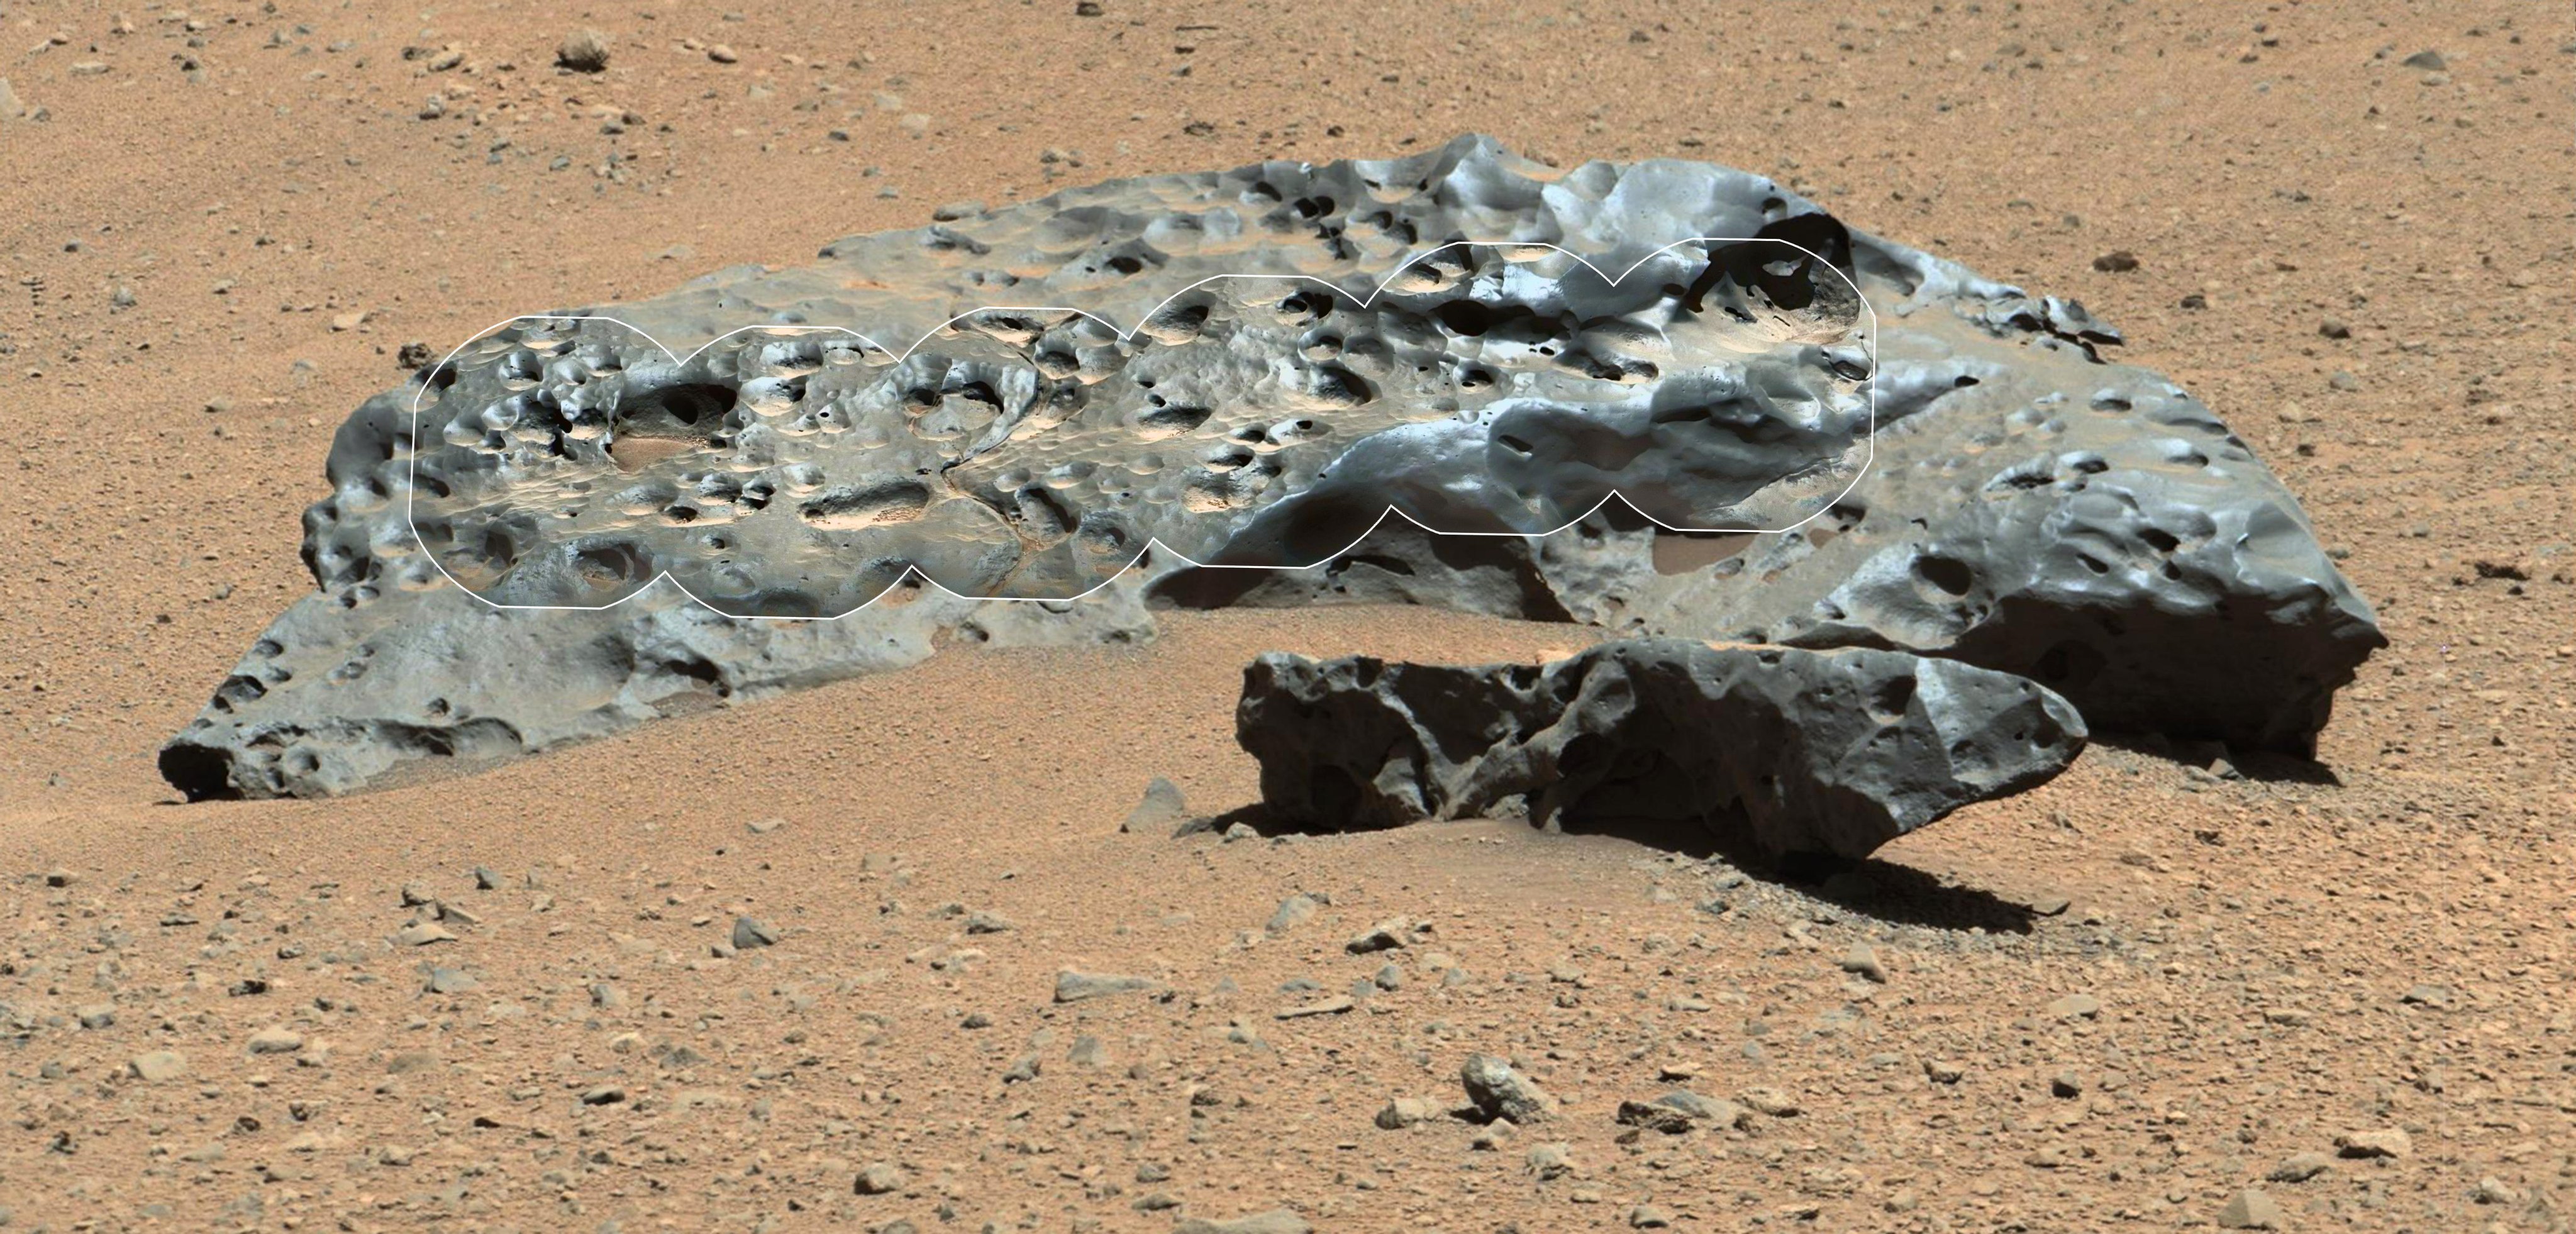 Le rover Curiosity trouve un cacao extraterrestre sur Mars